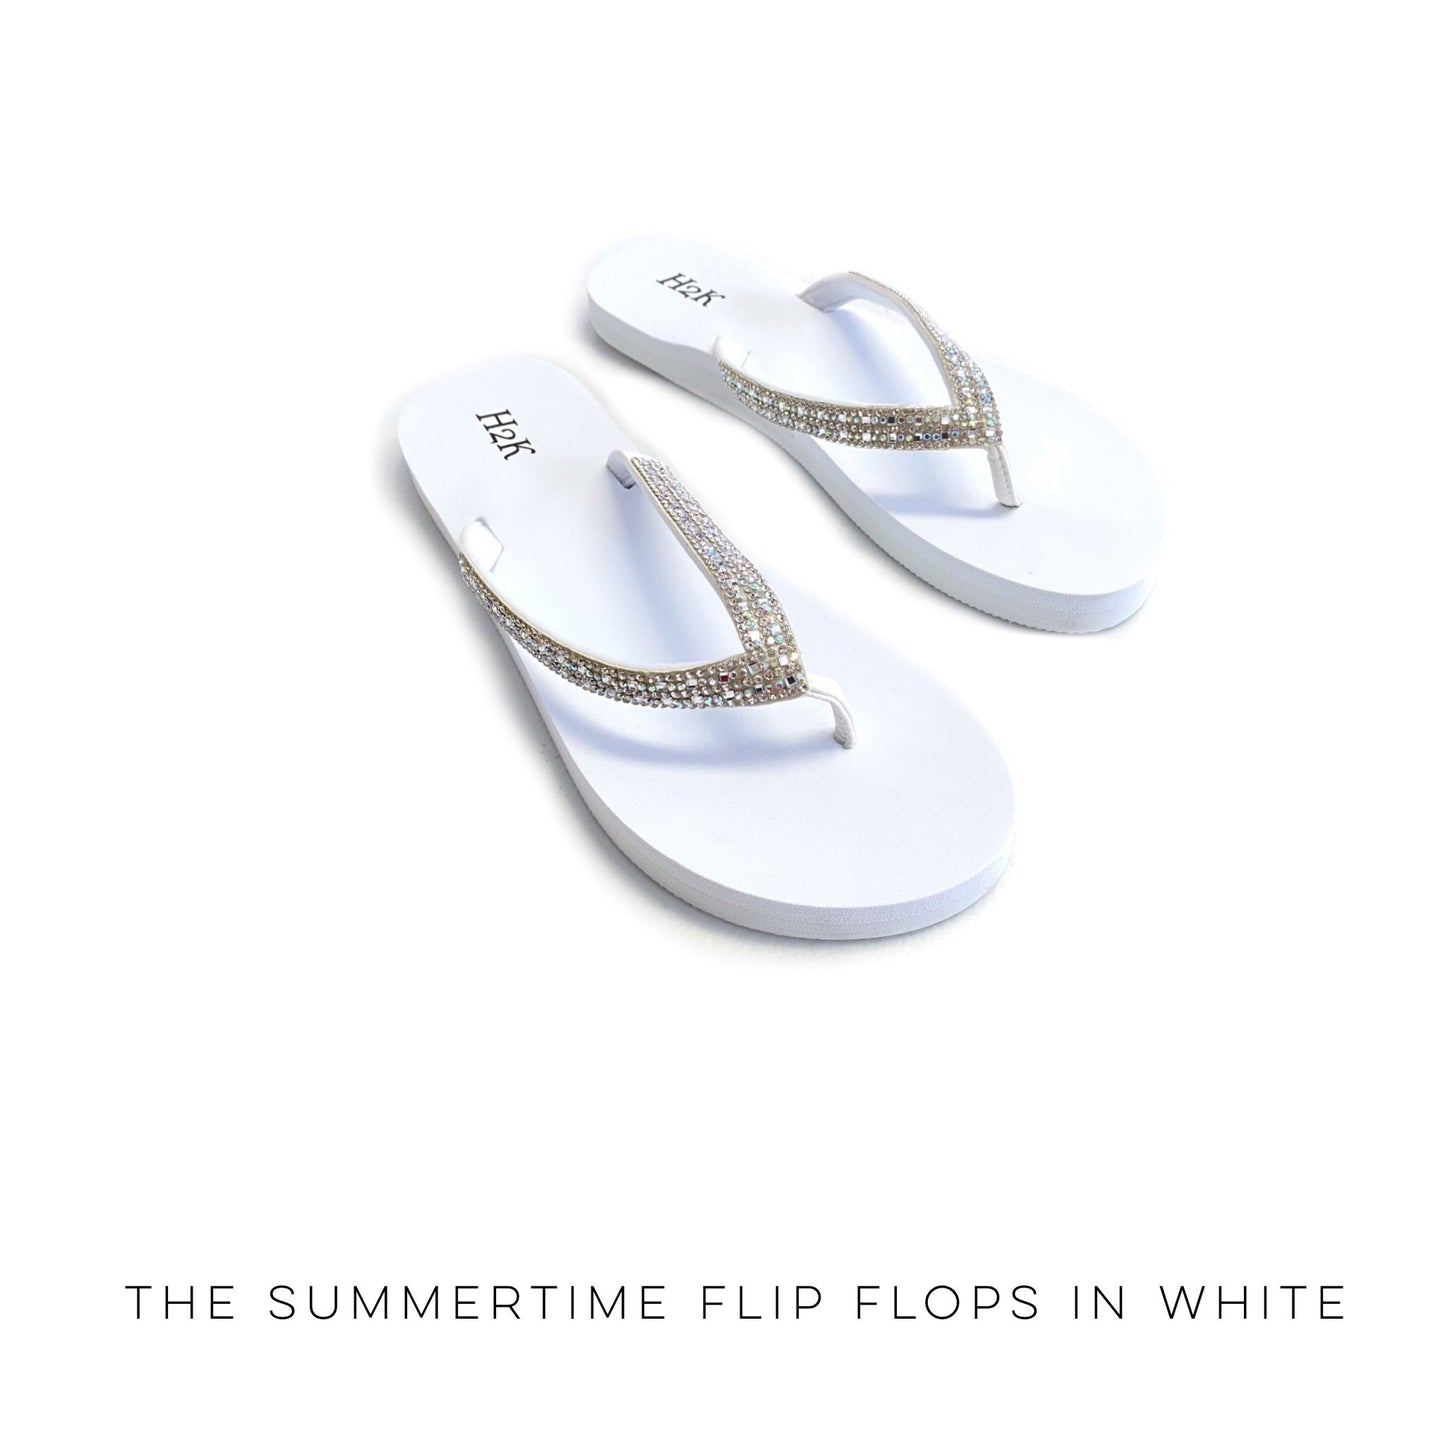 The Summertime Flip Flops in White